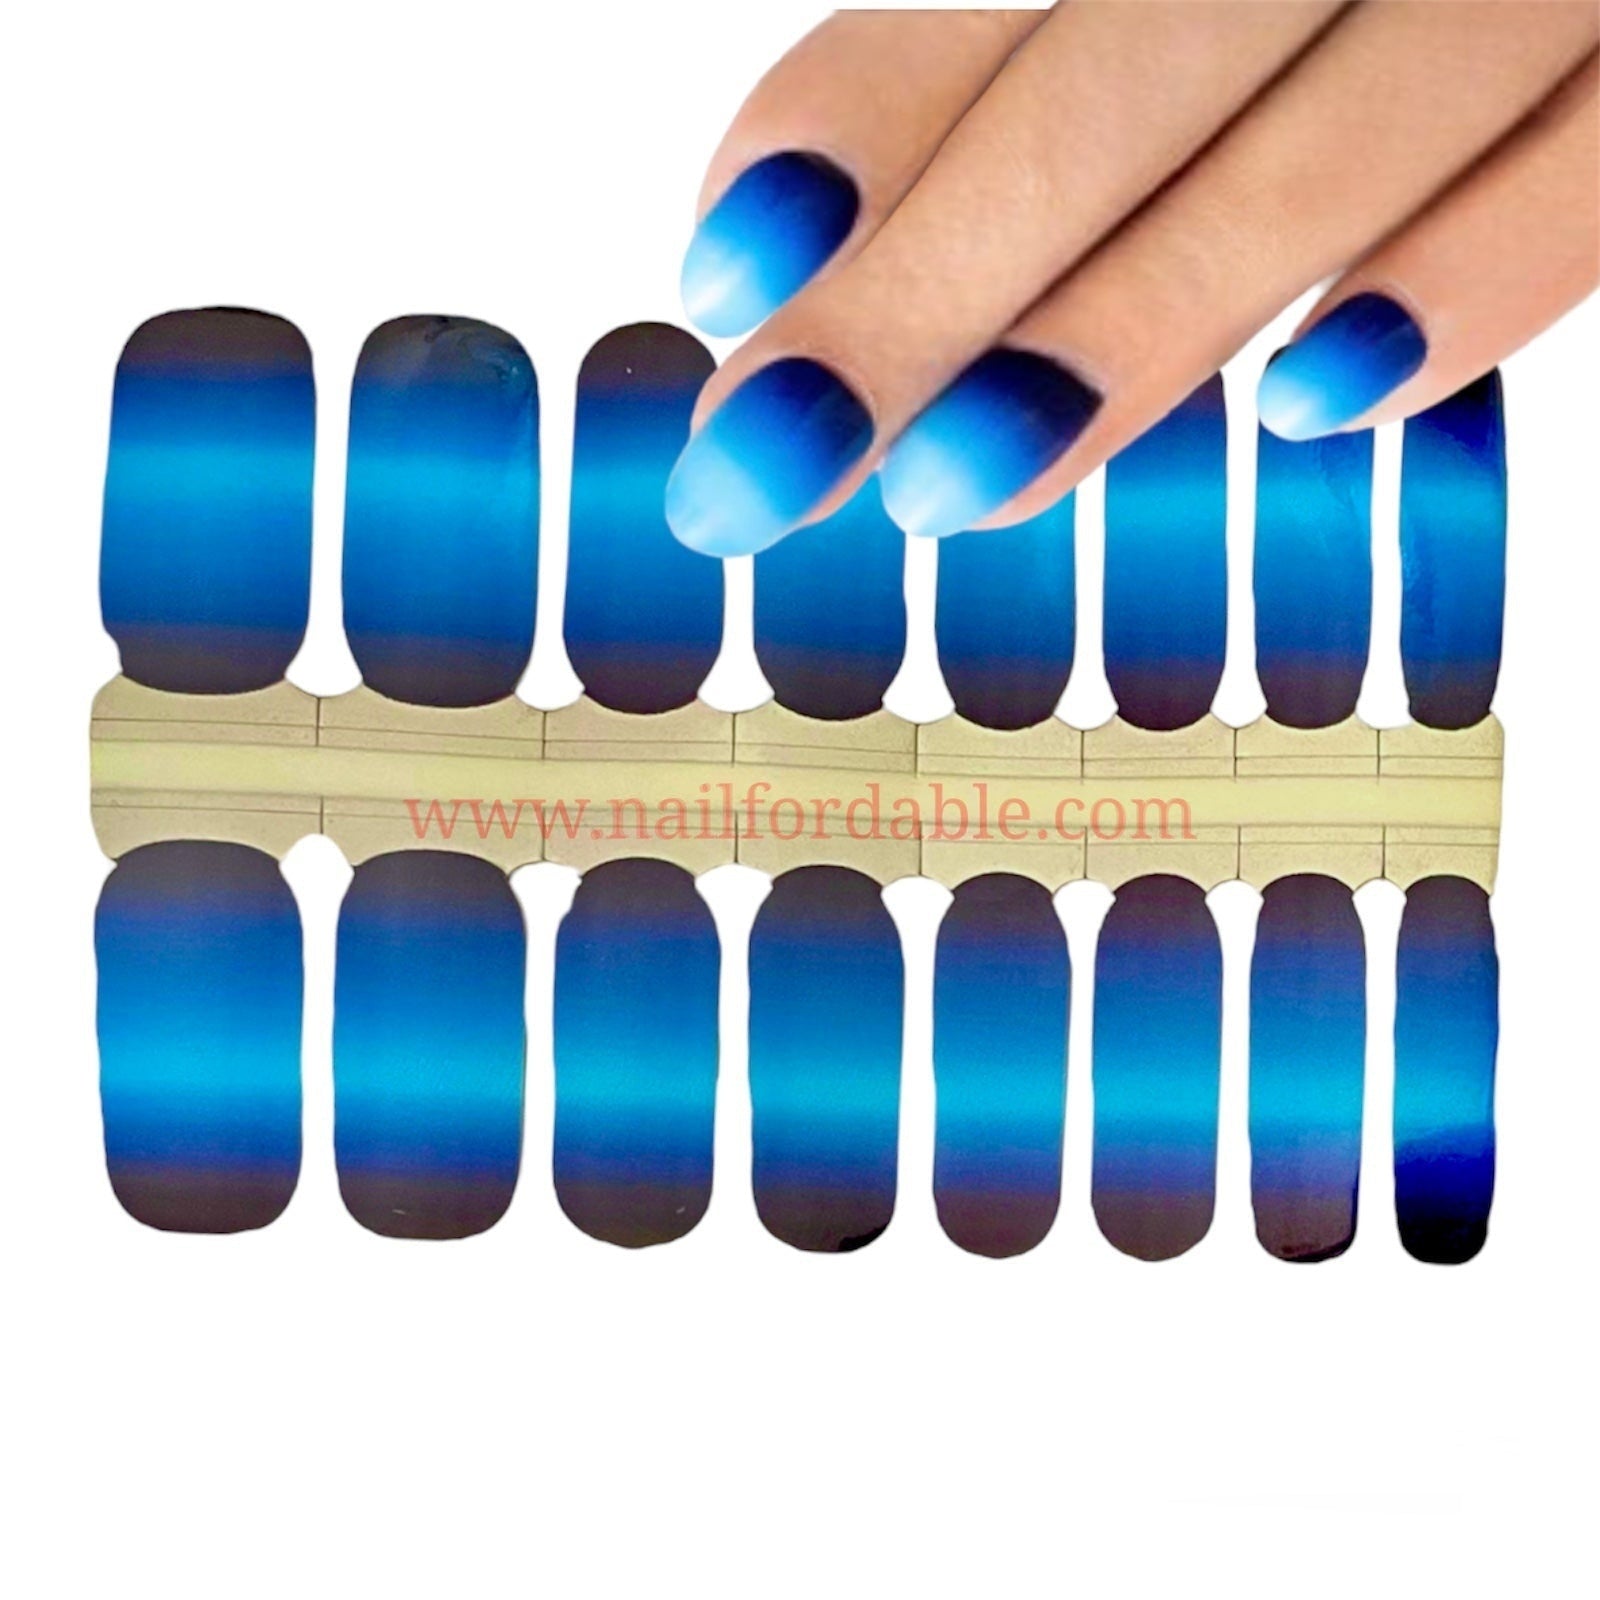 Deep blue Nail Wraps | Semi Cured Gel Wraps | Gel Nail Wraps |Nail Polish | Nail Stickers